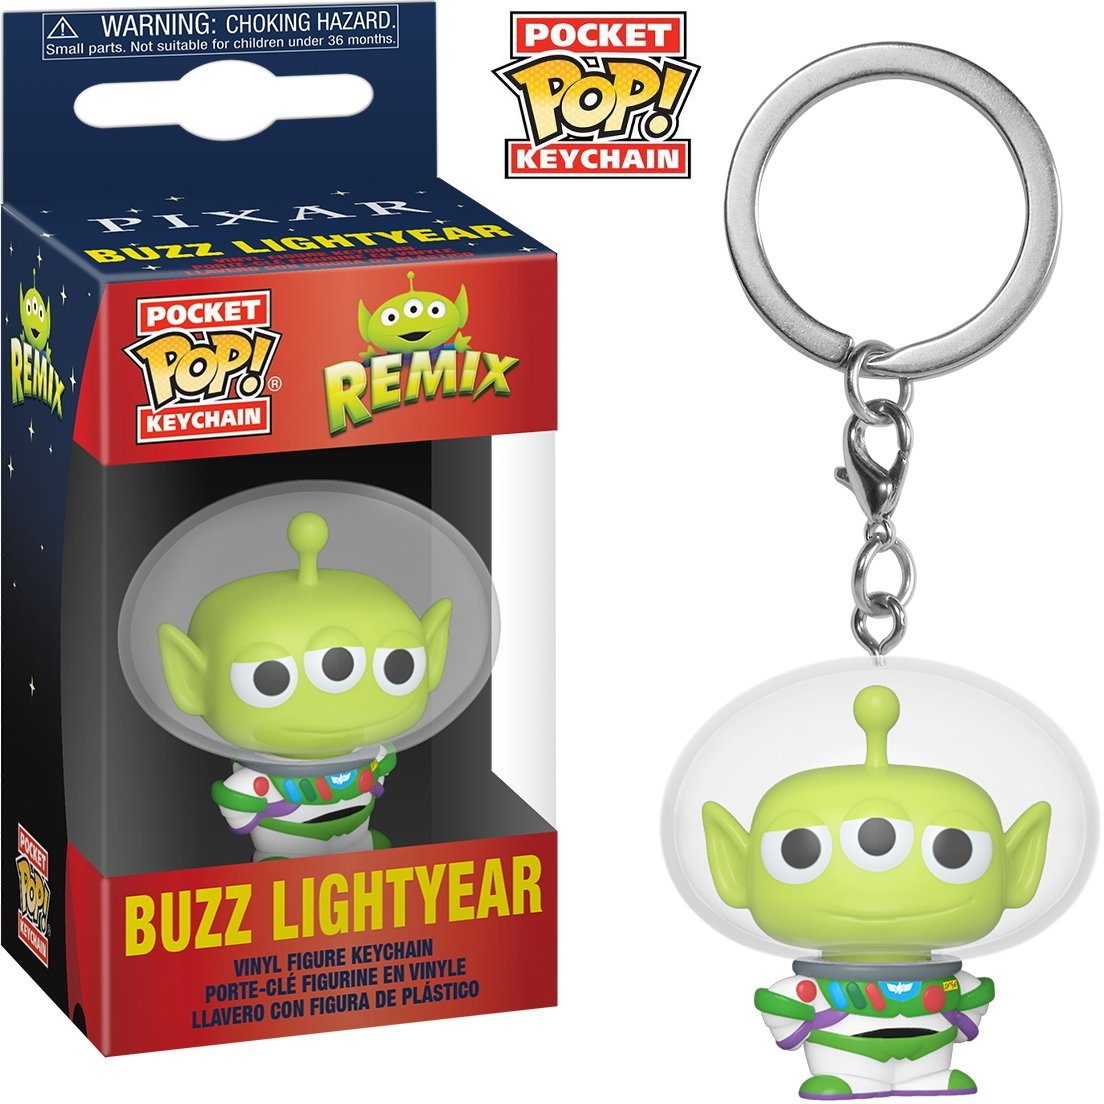 Remix Buzz - Funko Lightyear Pop! Pixar Pocket Schlüsselanhänger